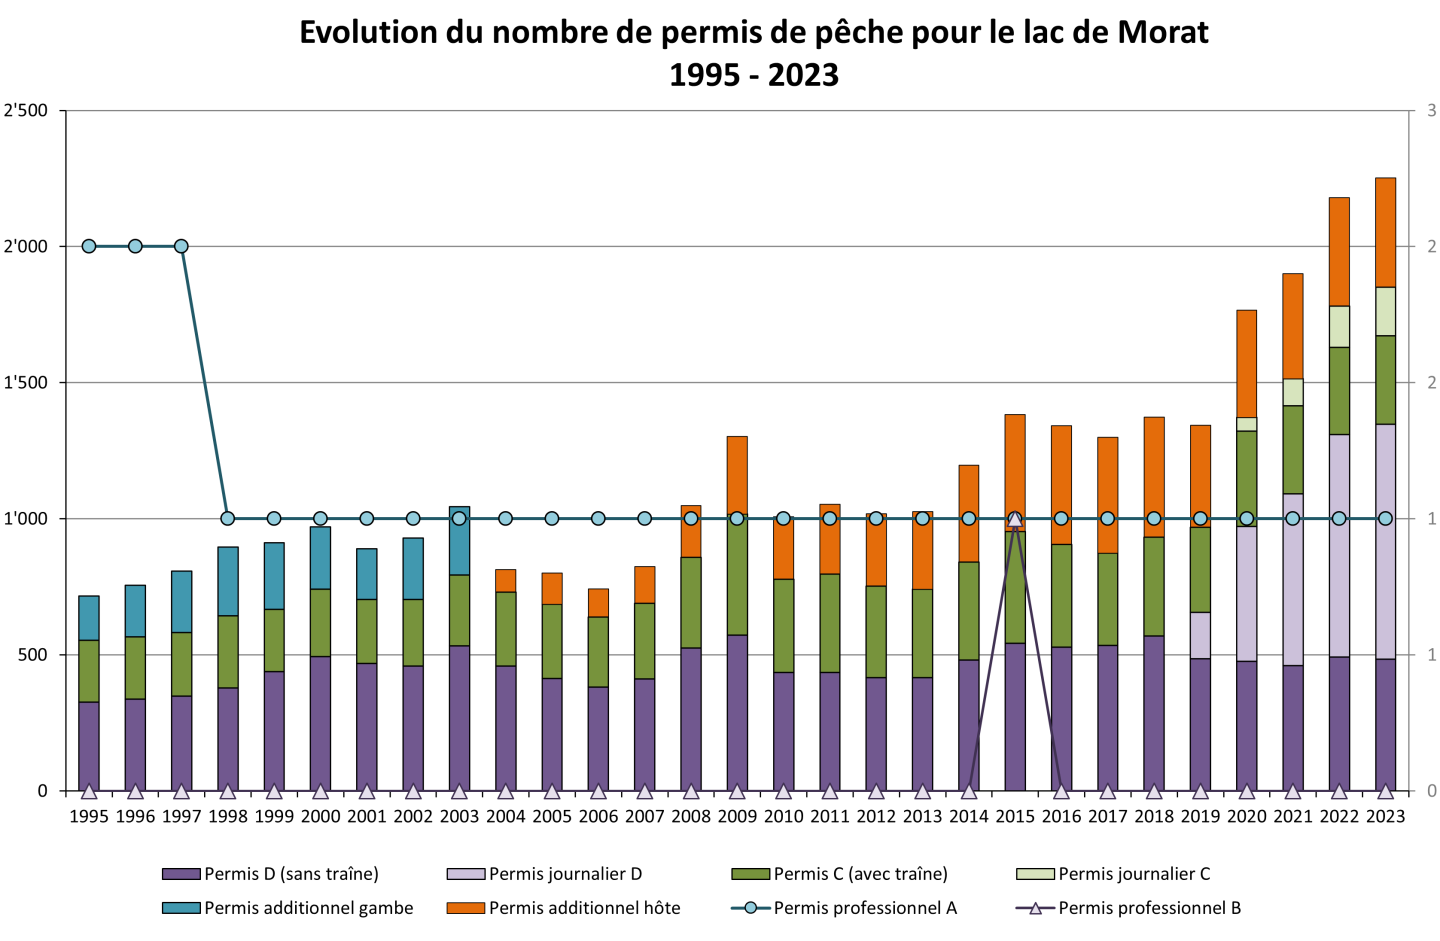 Evolution du nombre de permis de pêche pour le lac de Morat 1995-2023